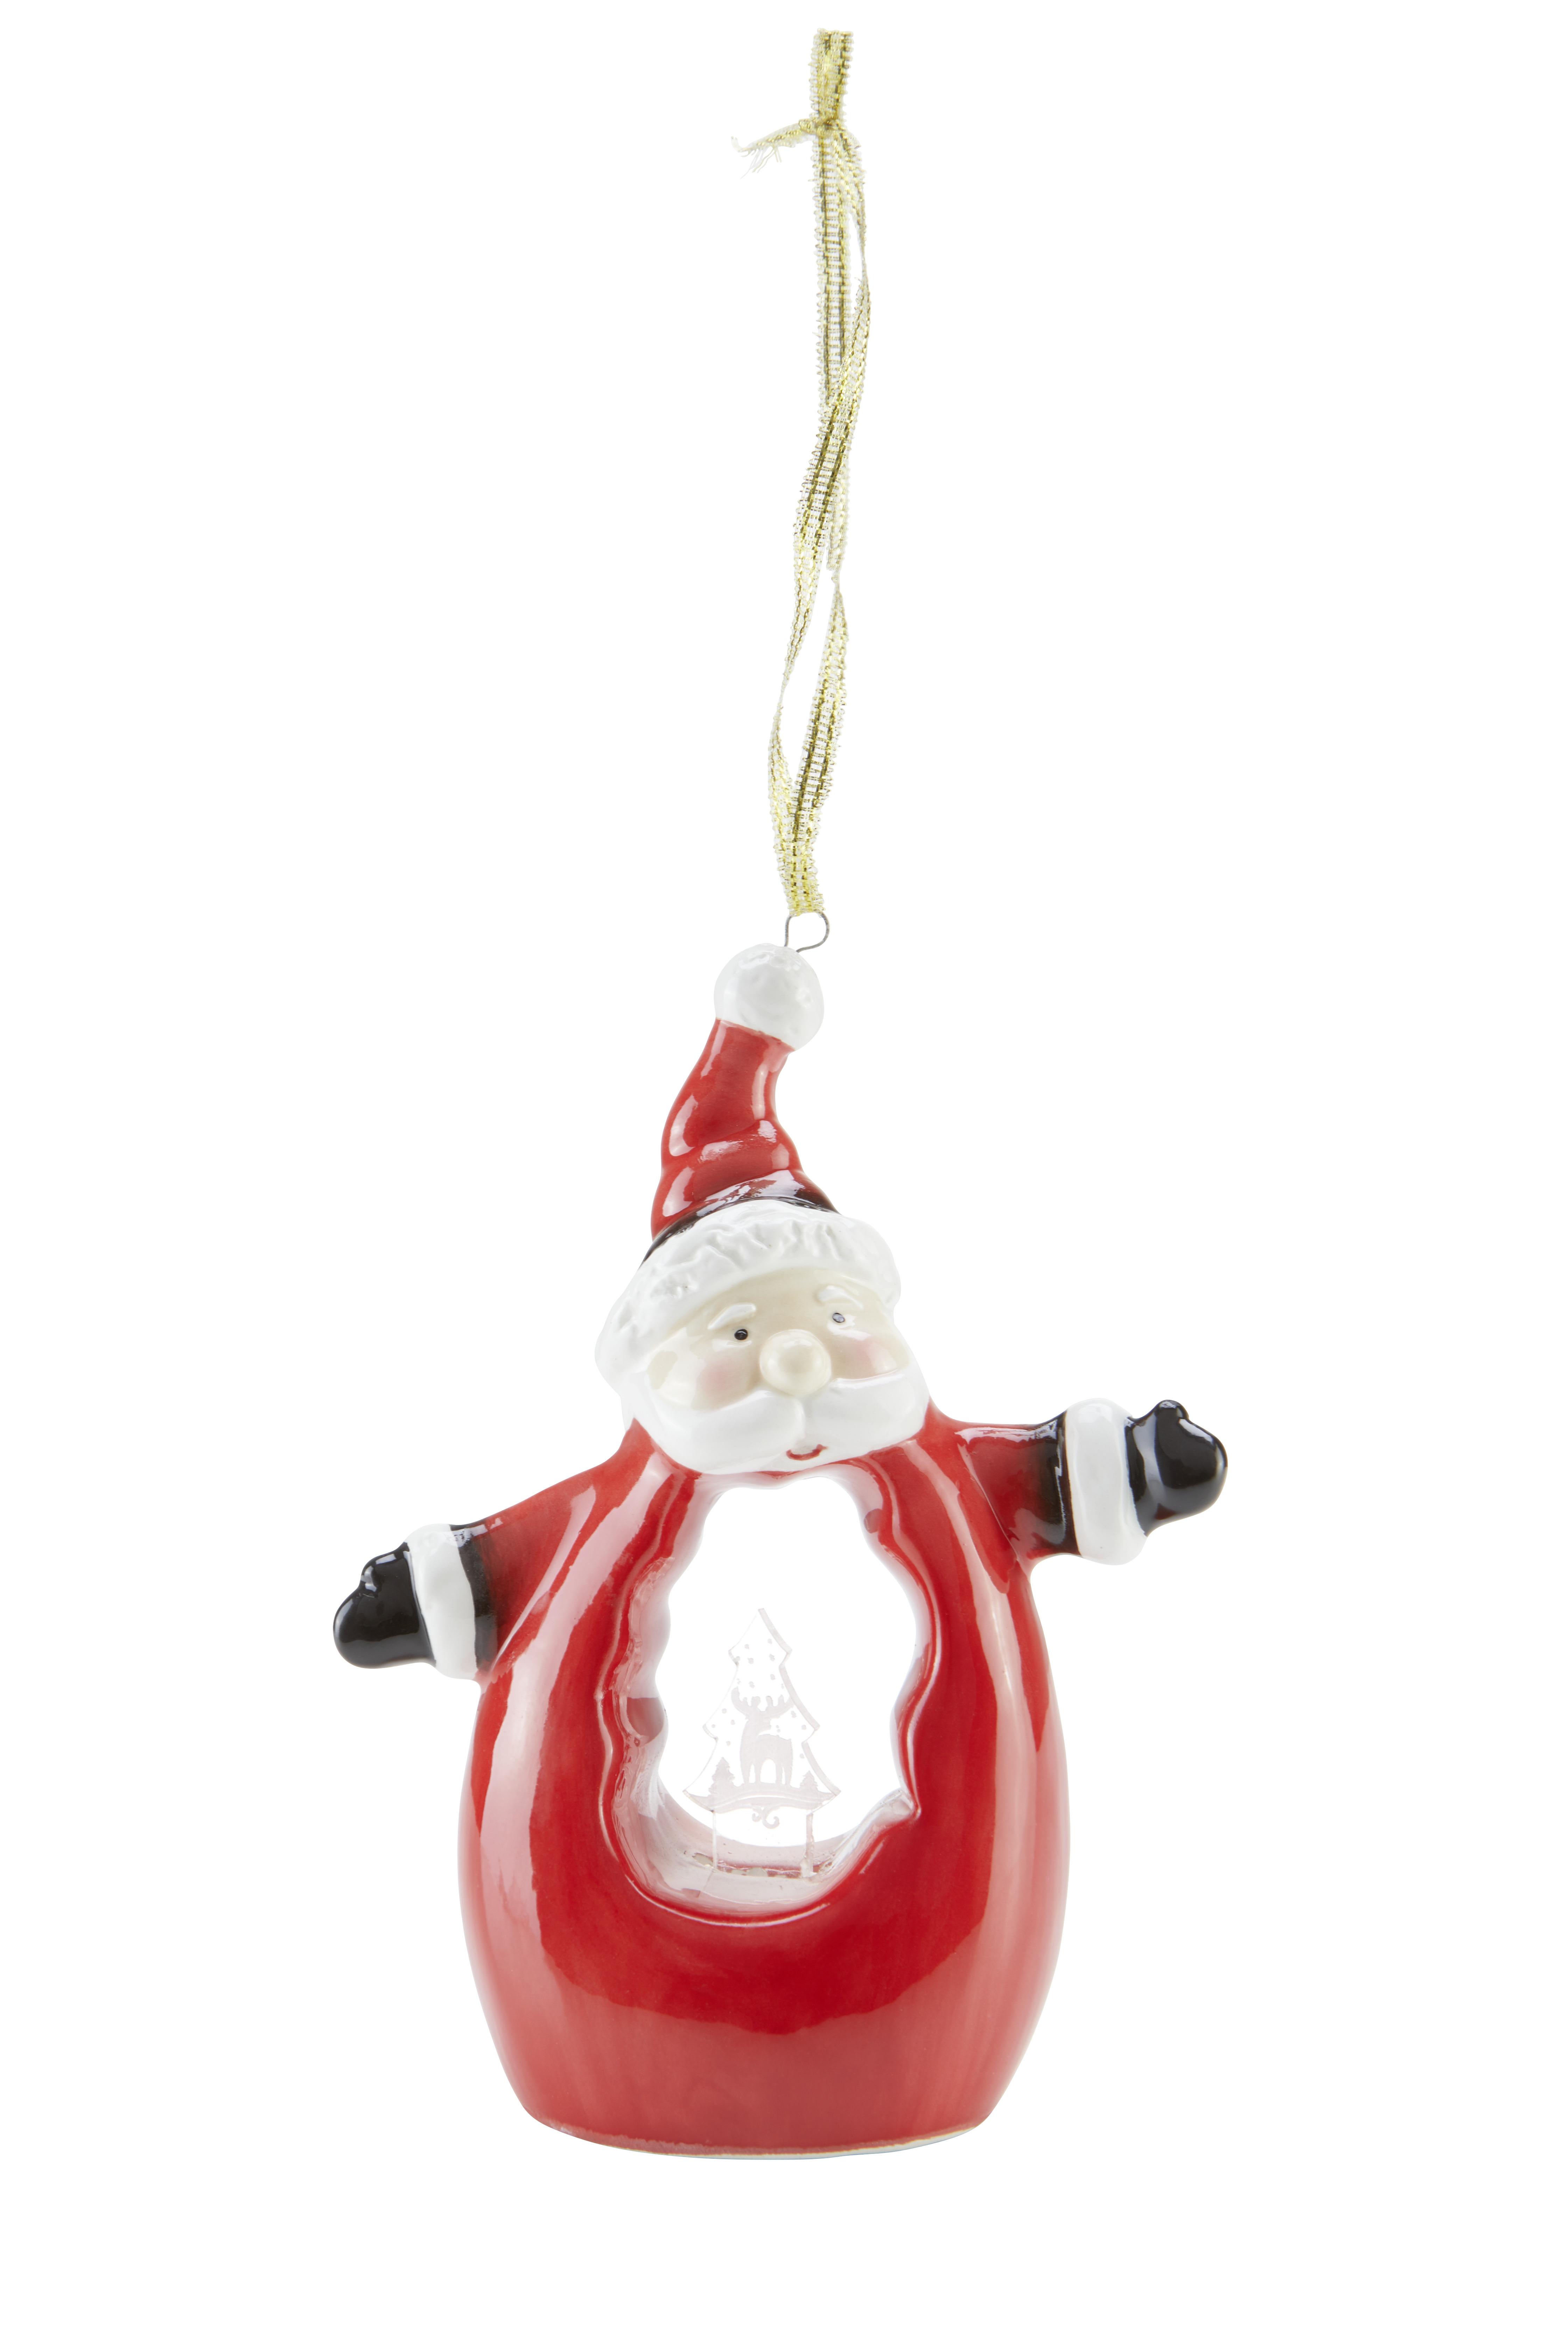 LED-Dekoleuchte Rafaela Weihnachtsmotiv zum Hängen - Rot/Weiß, ROMANTIK / LANDHAUS, Keramik (14,5cm) - James Wood